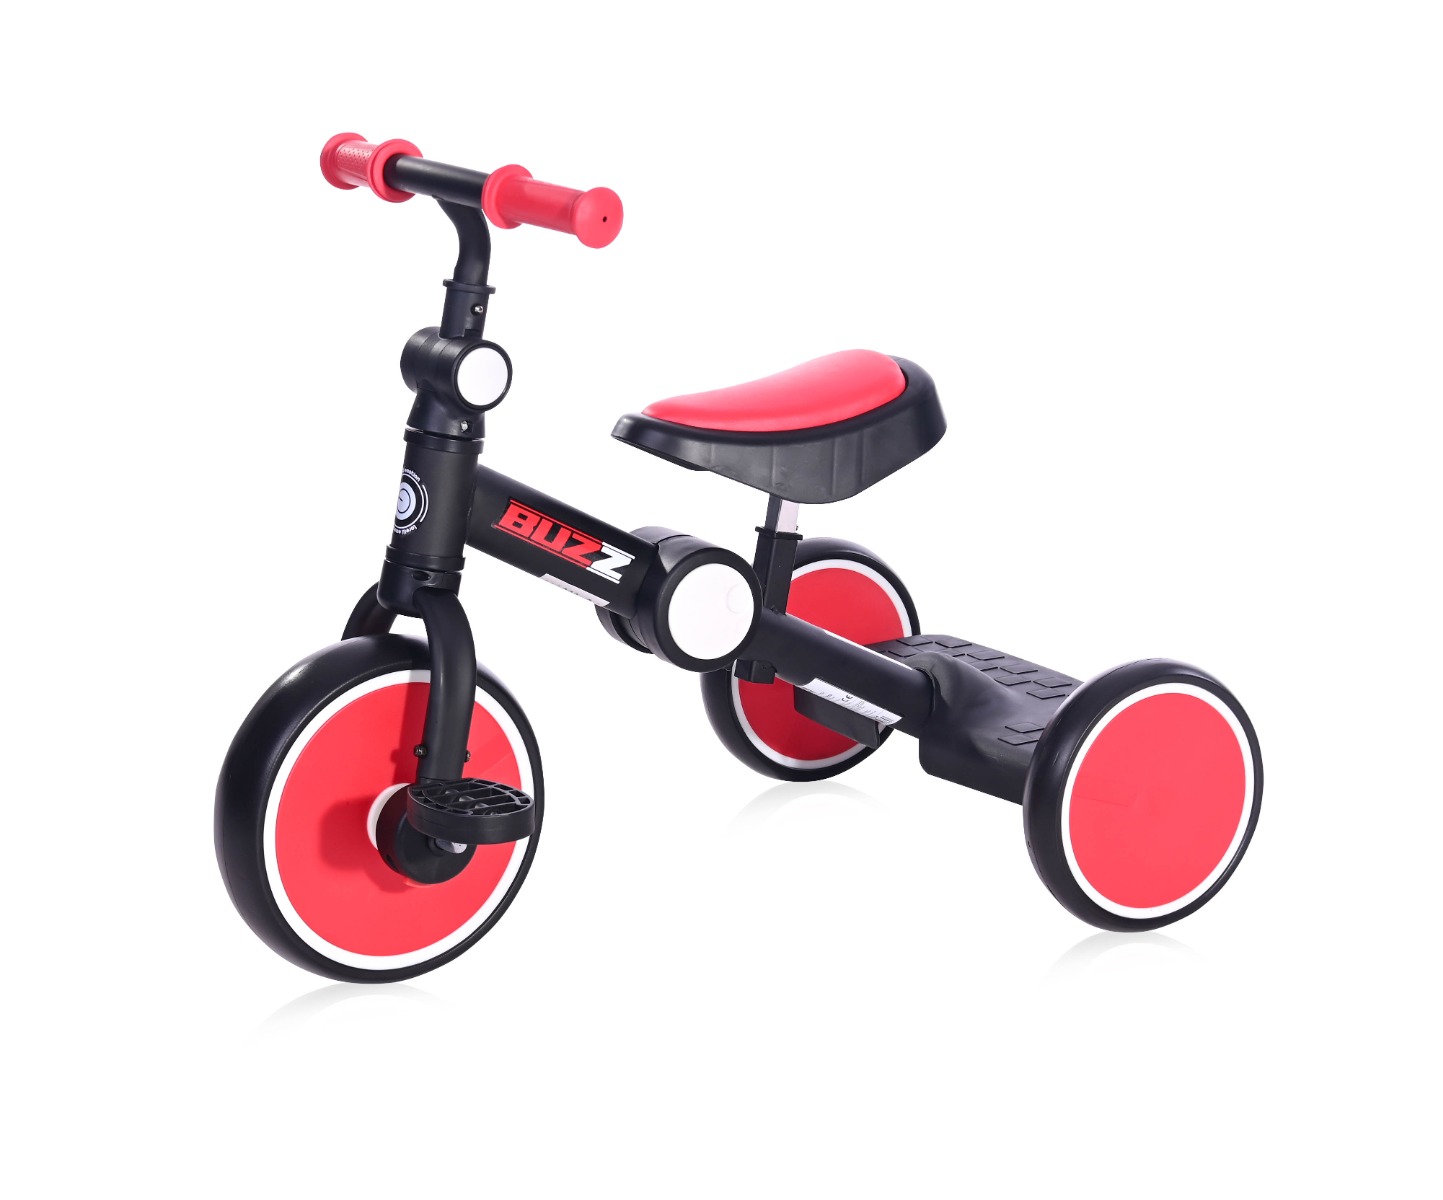 Tricicleta pentru copii, complet pliabila, Lorelli Buzz, Black Red La Plimbare 2023-09-21